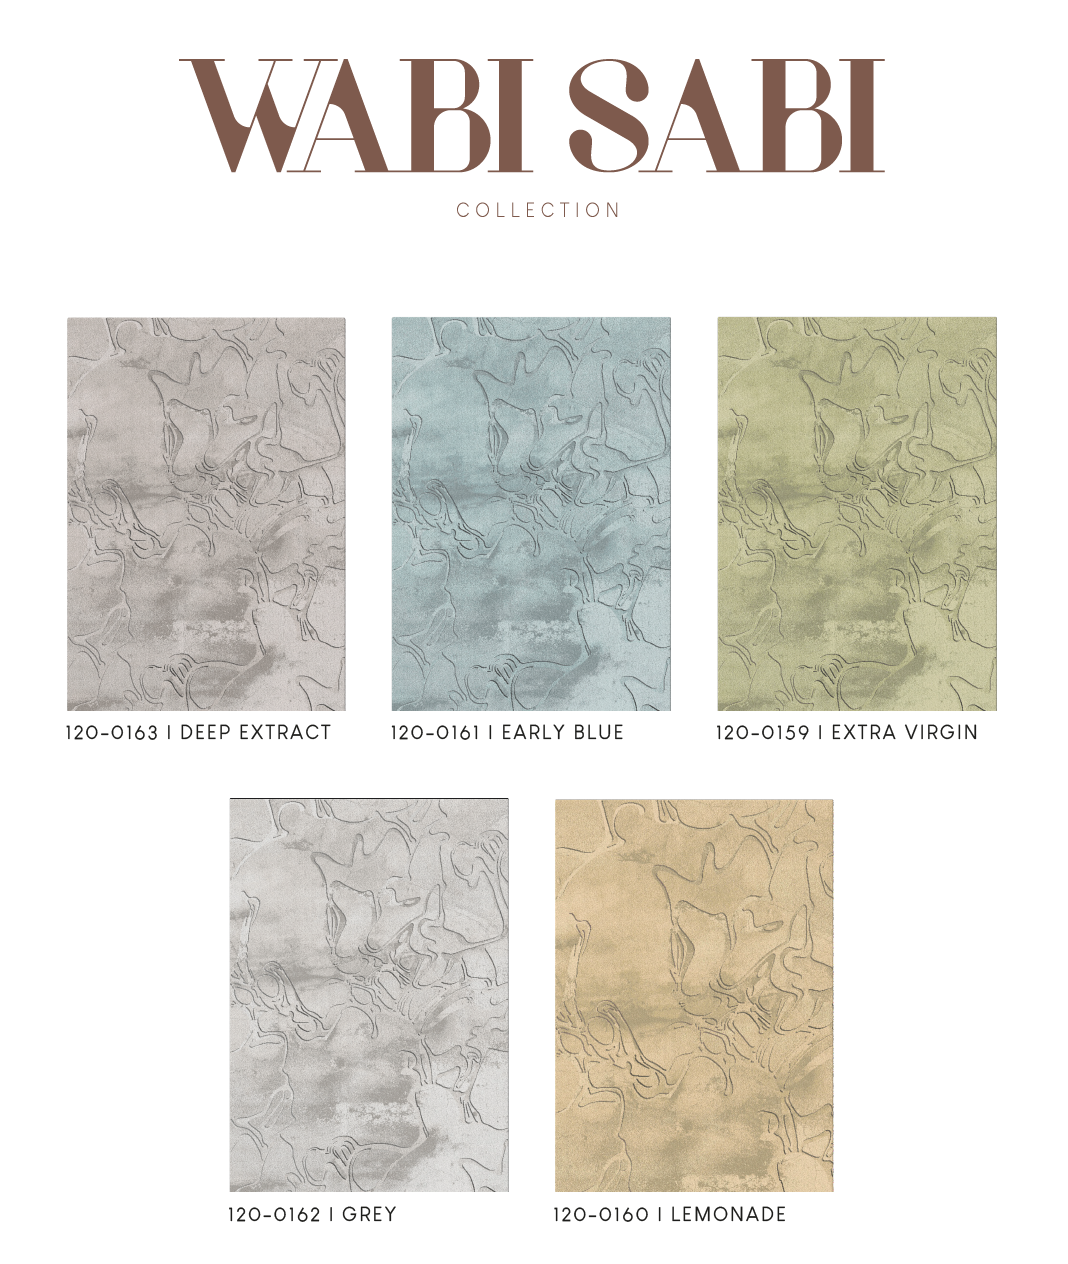 0159 WABI SABI - EXTRA VIRGIN